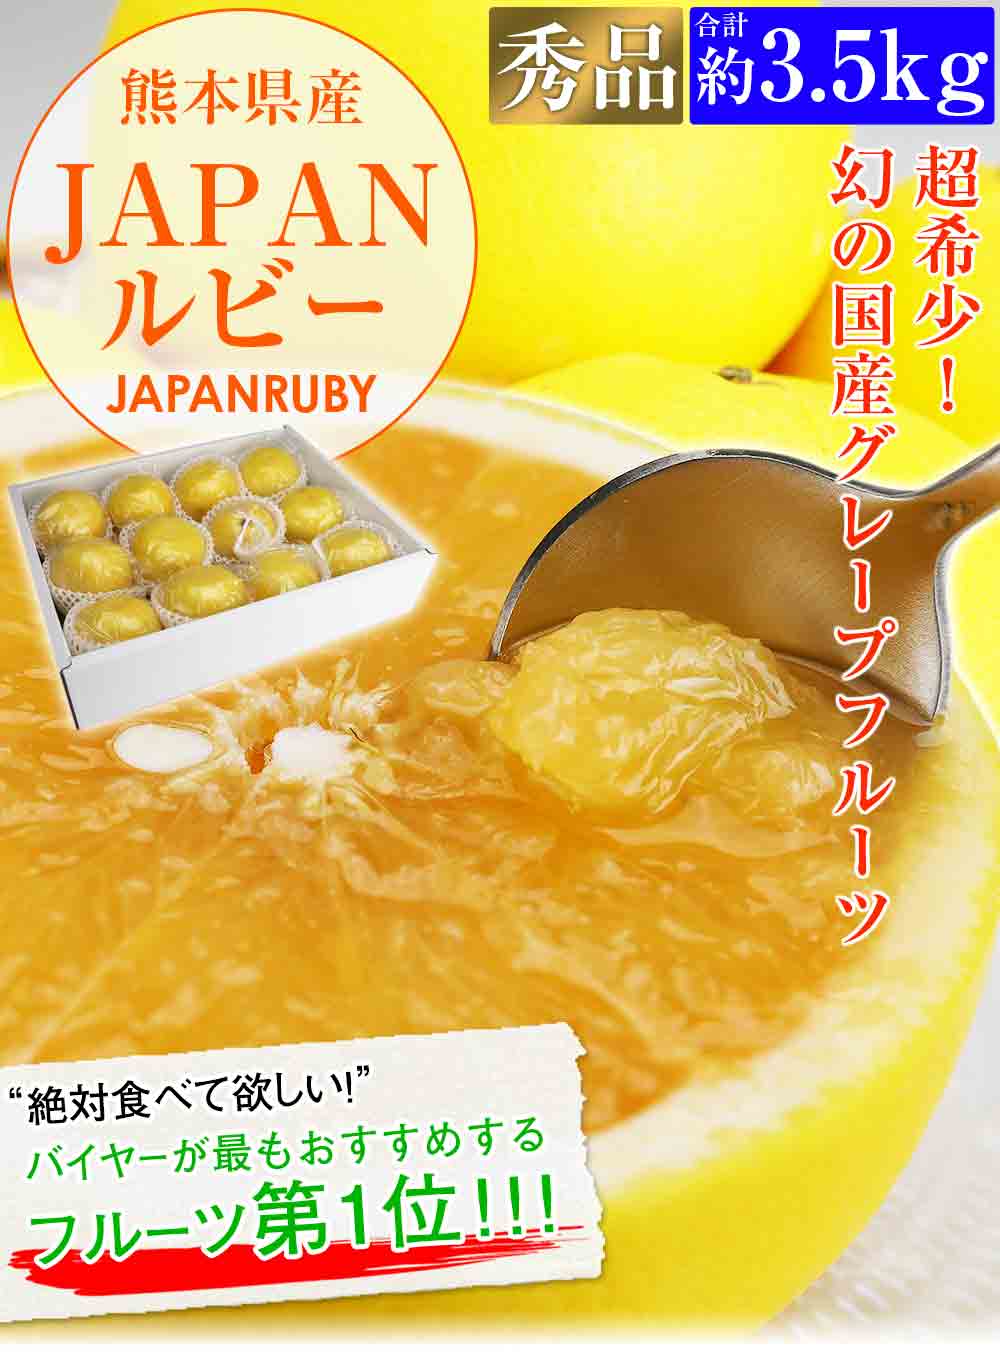 グレープフルーツ 国産 超希少 JAPANルビー 約3.5kg 秀品 贈答用 ギフト 熊本県産 柑橘 冷蔵便 同梱不可 指定日不可